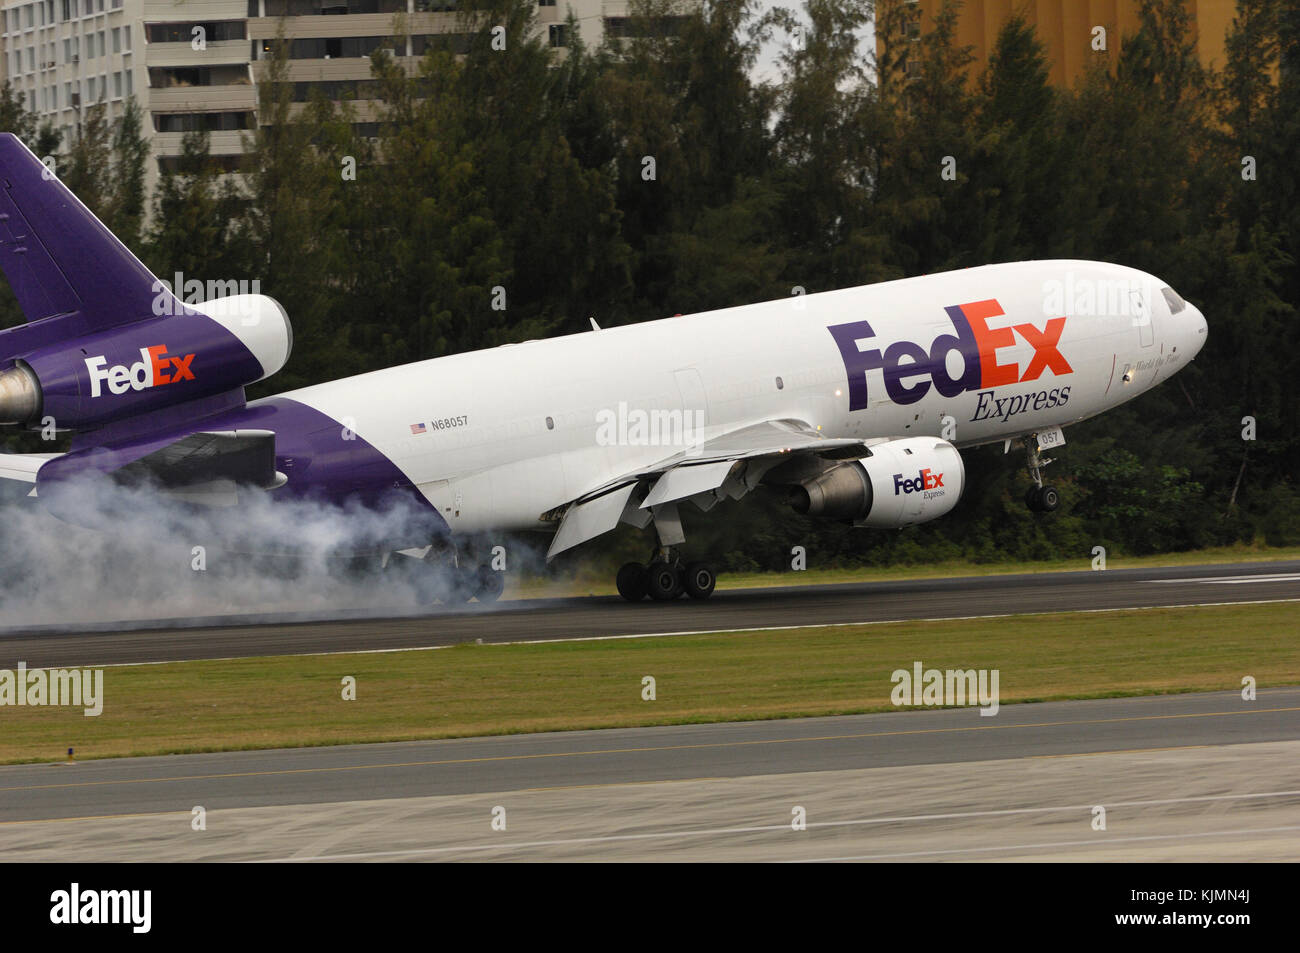 FedEx Federal Express McDonnell Douglas MD-10-10 F Touchdown auf der Landebahn mit Reifen rauchen. Stockfoto